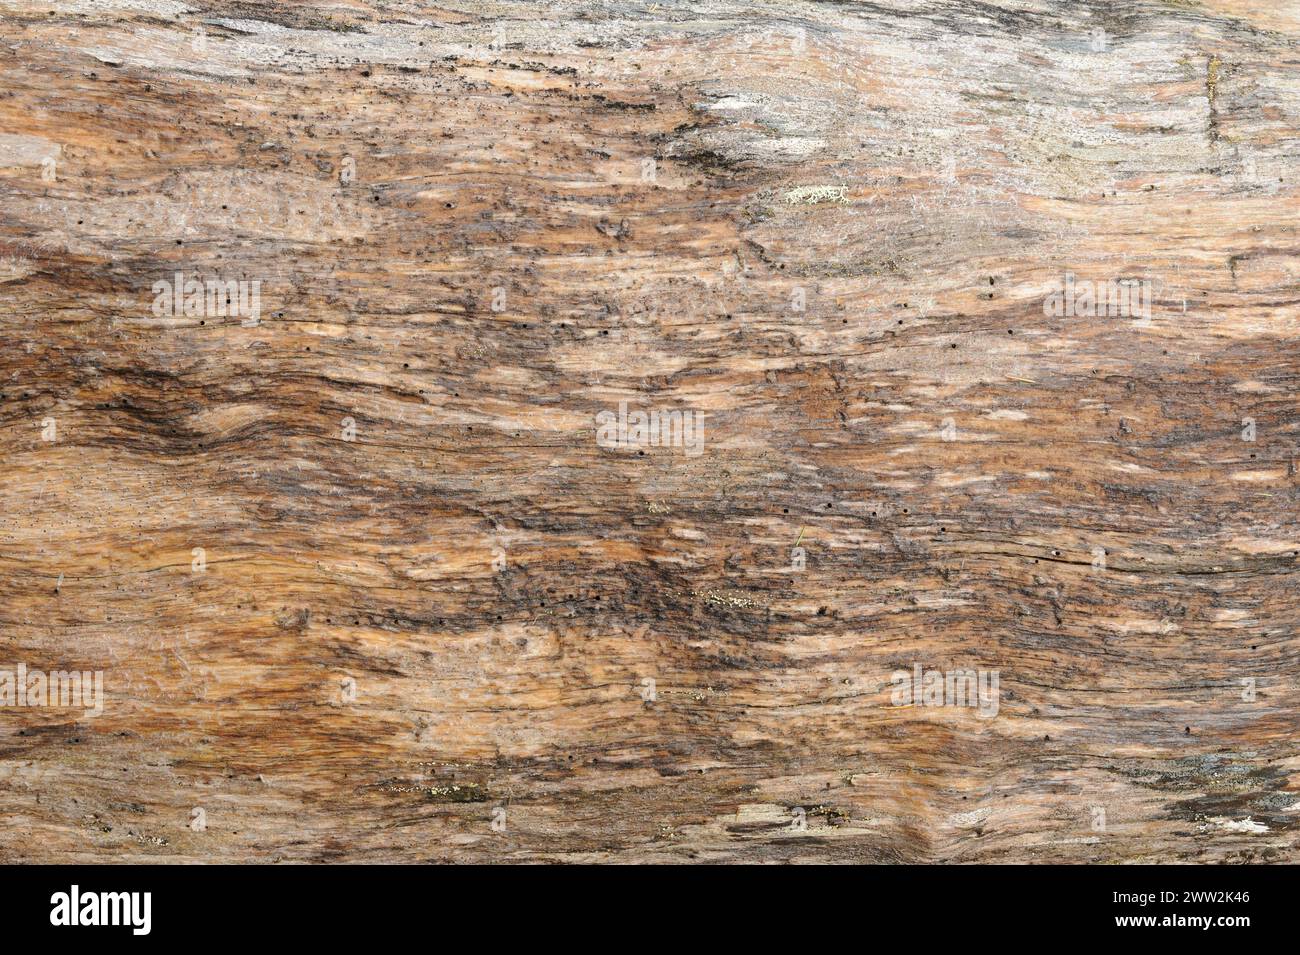 Ein detaillierter Blick auf die Körnung, Textur und Muster auf einer alten Holzoberfläche. Stockfoto